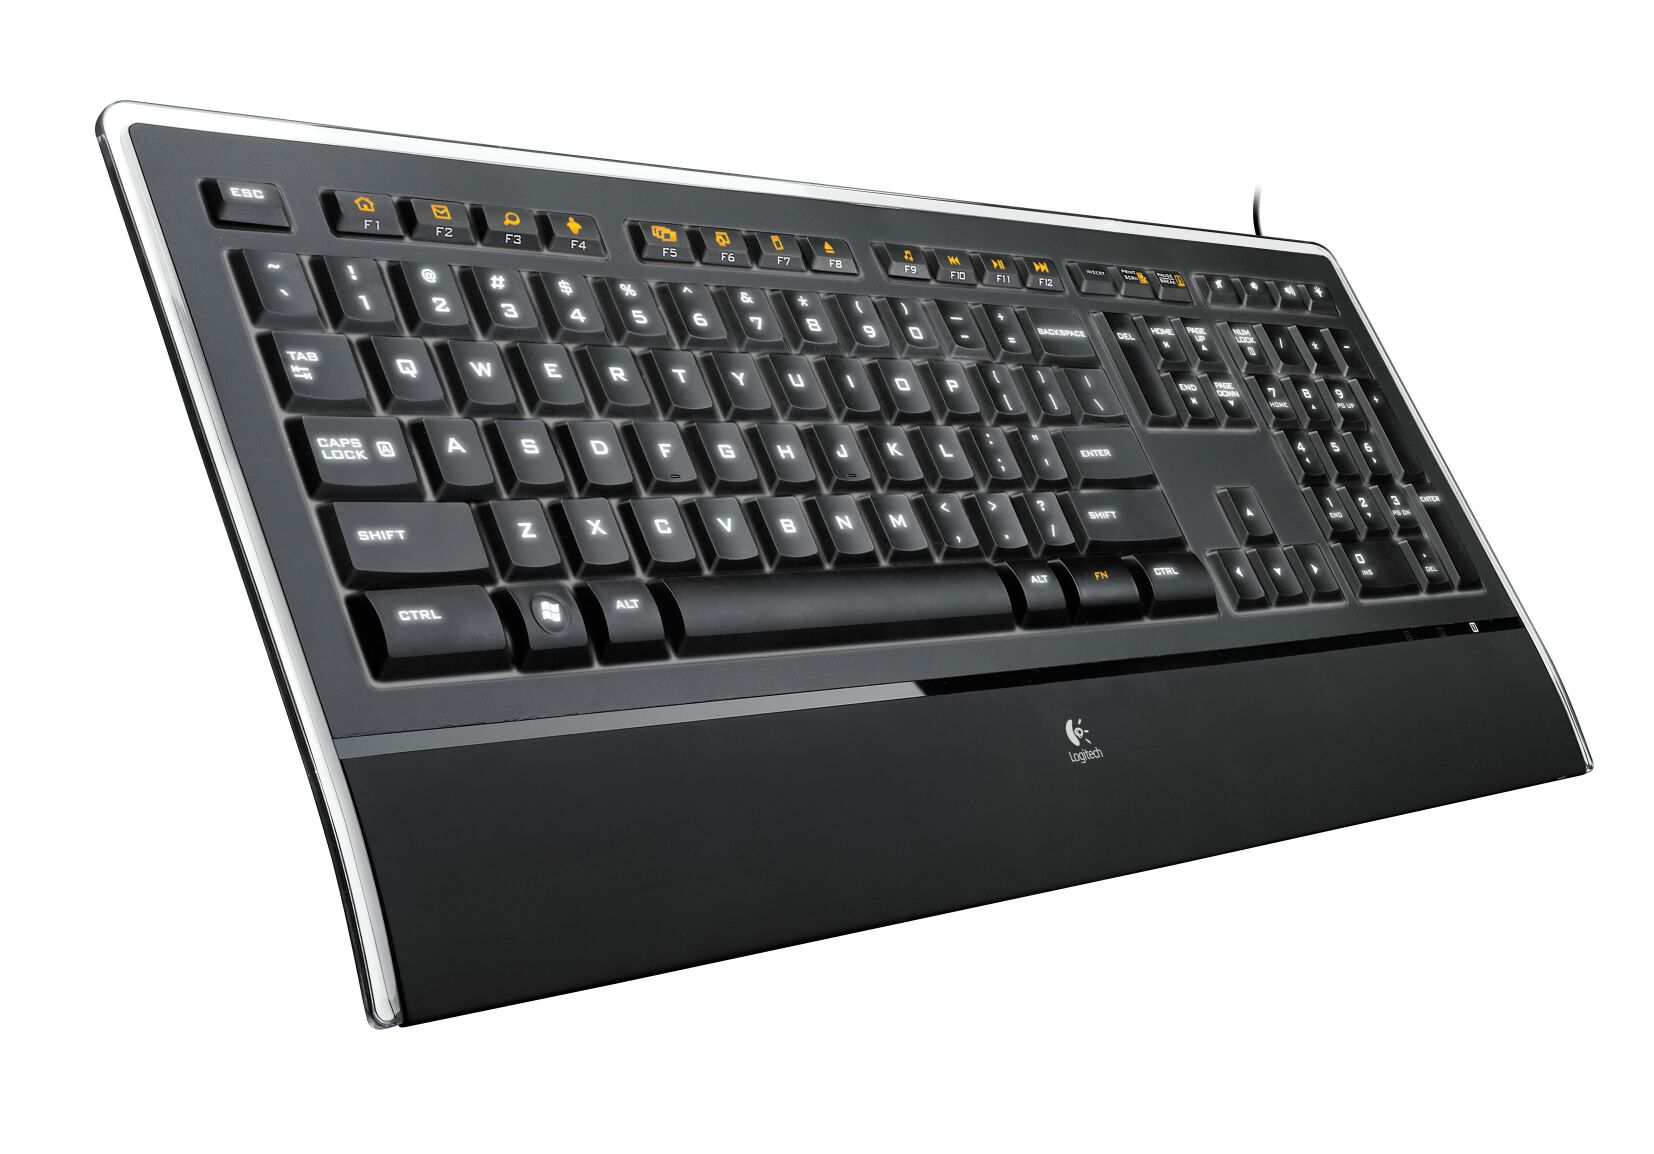 Immagine pubblicata in relazione al seguente contenuto: Logitech annuncia la nuova tastiera Illuminated Keyboard | Nome immagine: news8463_1.jpg